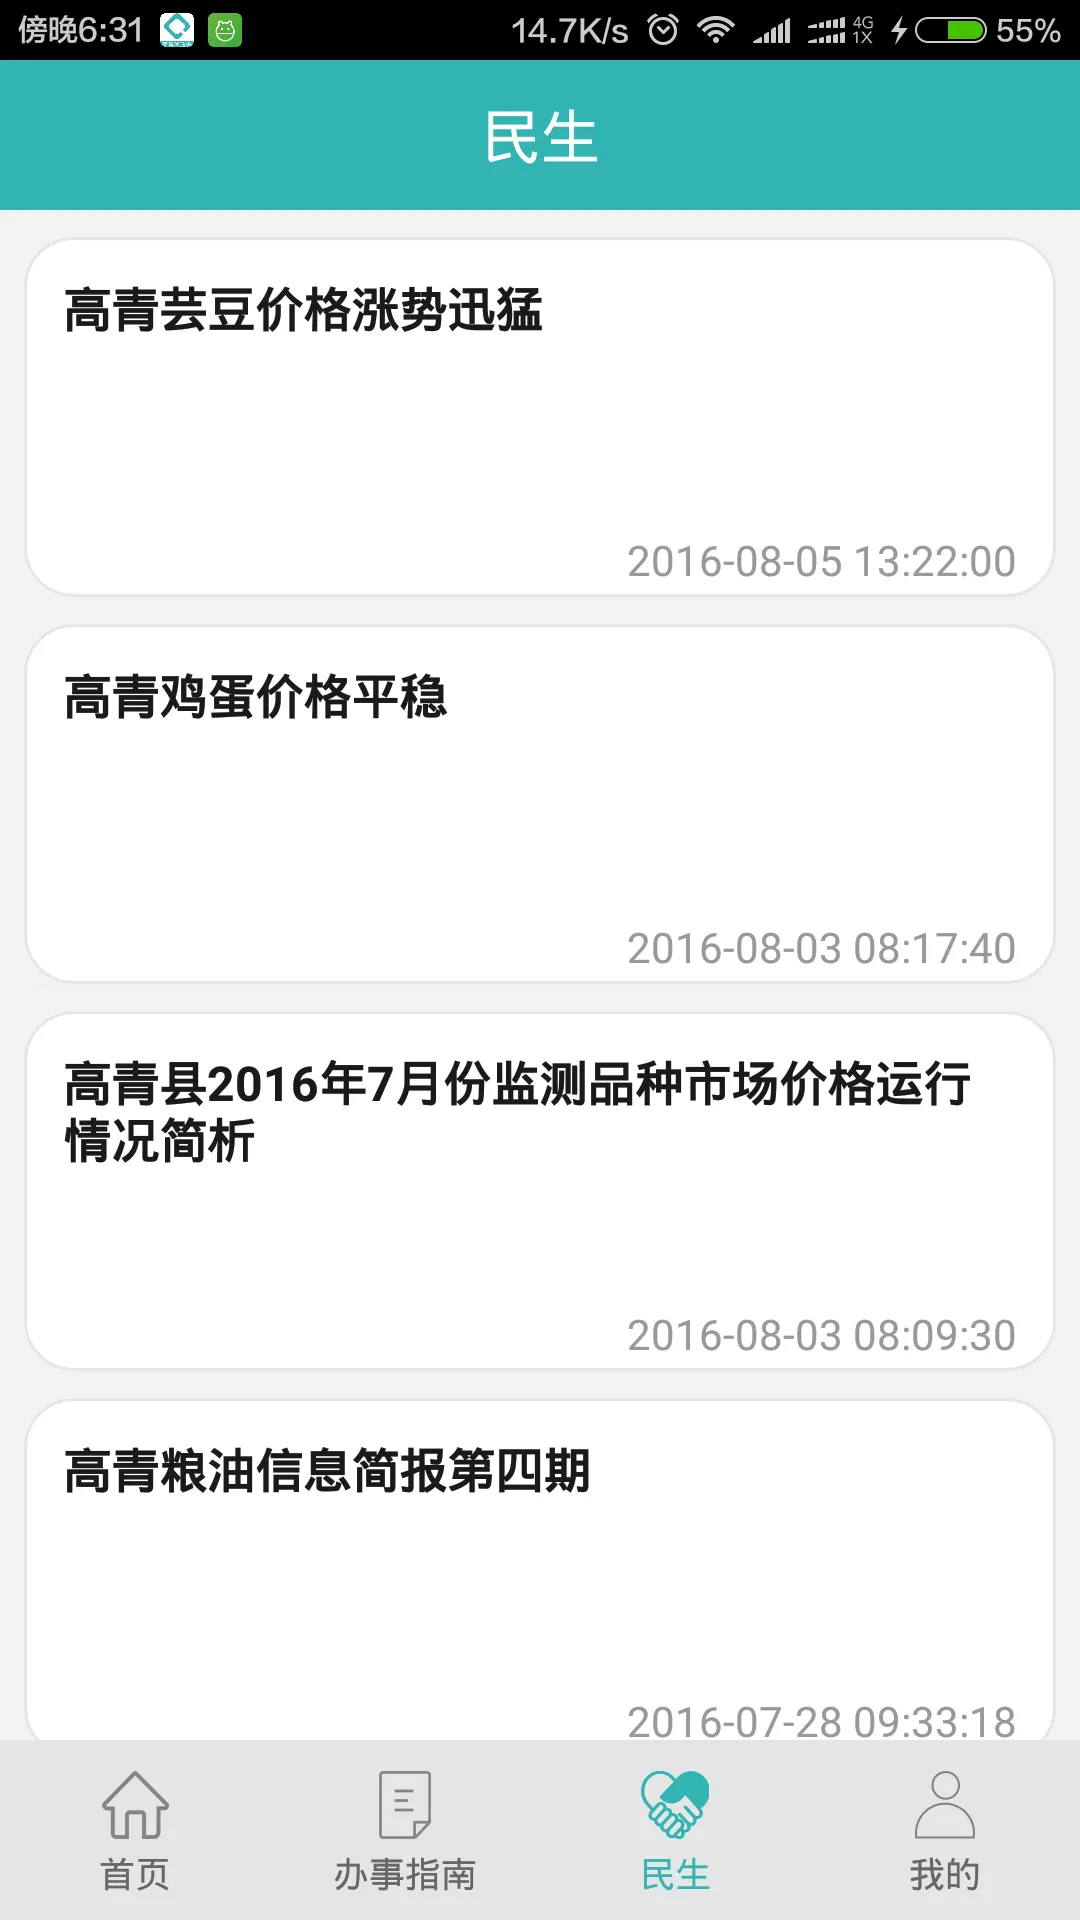 高青微政务手机版 v2.4 安卓最新版 1